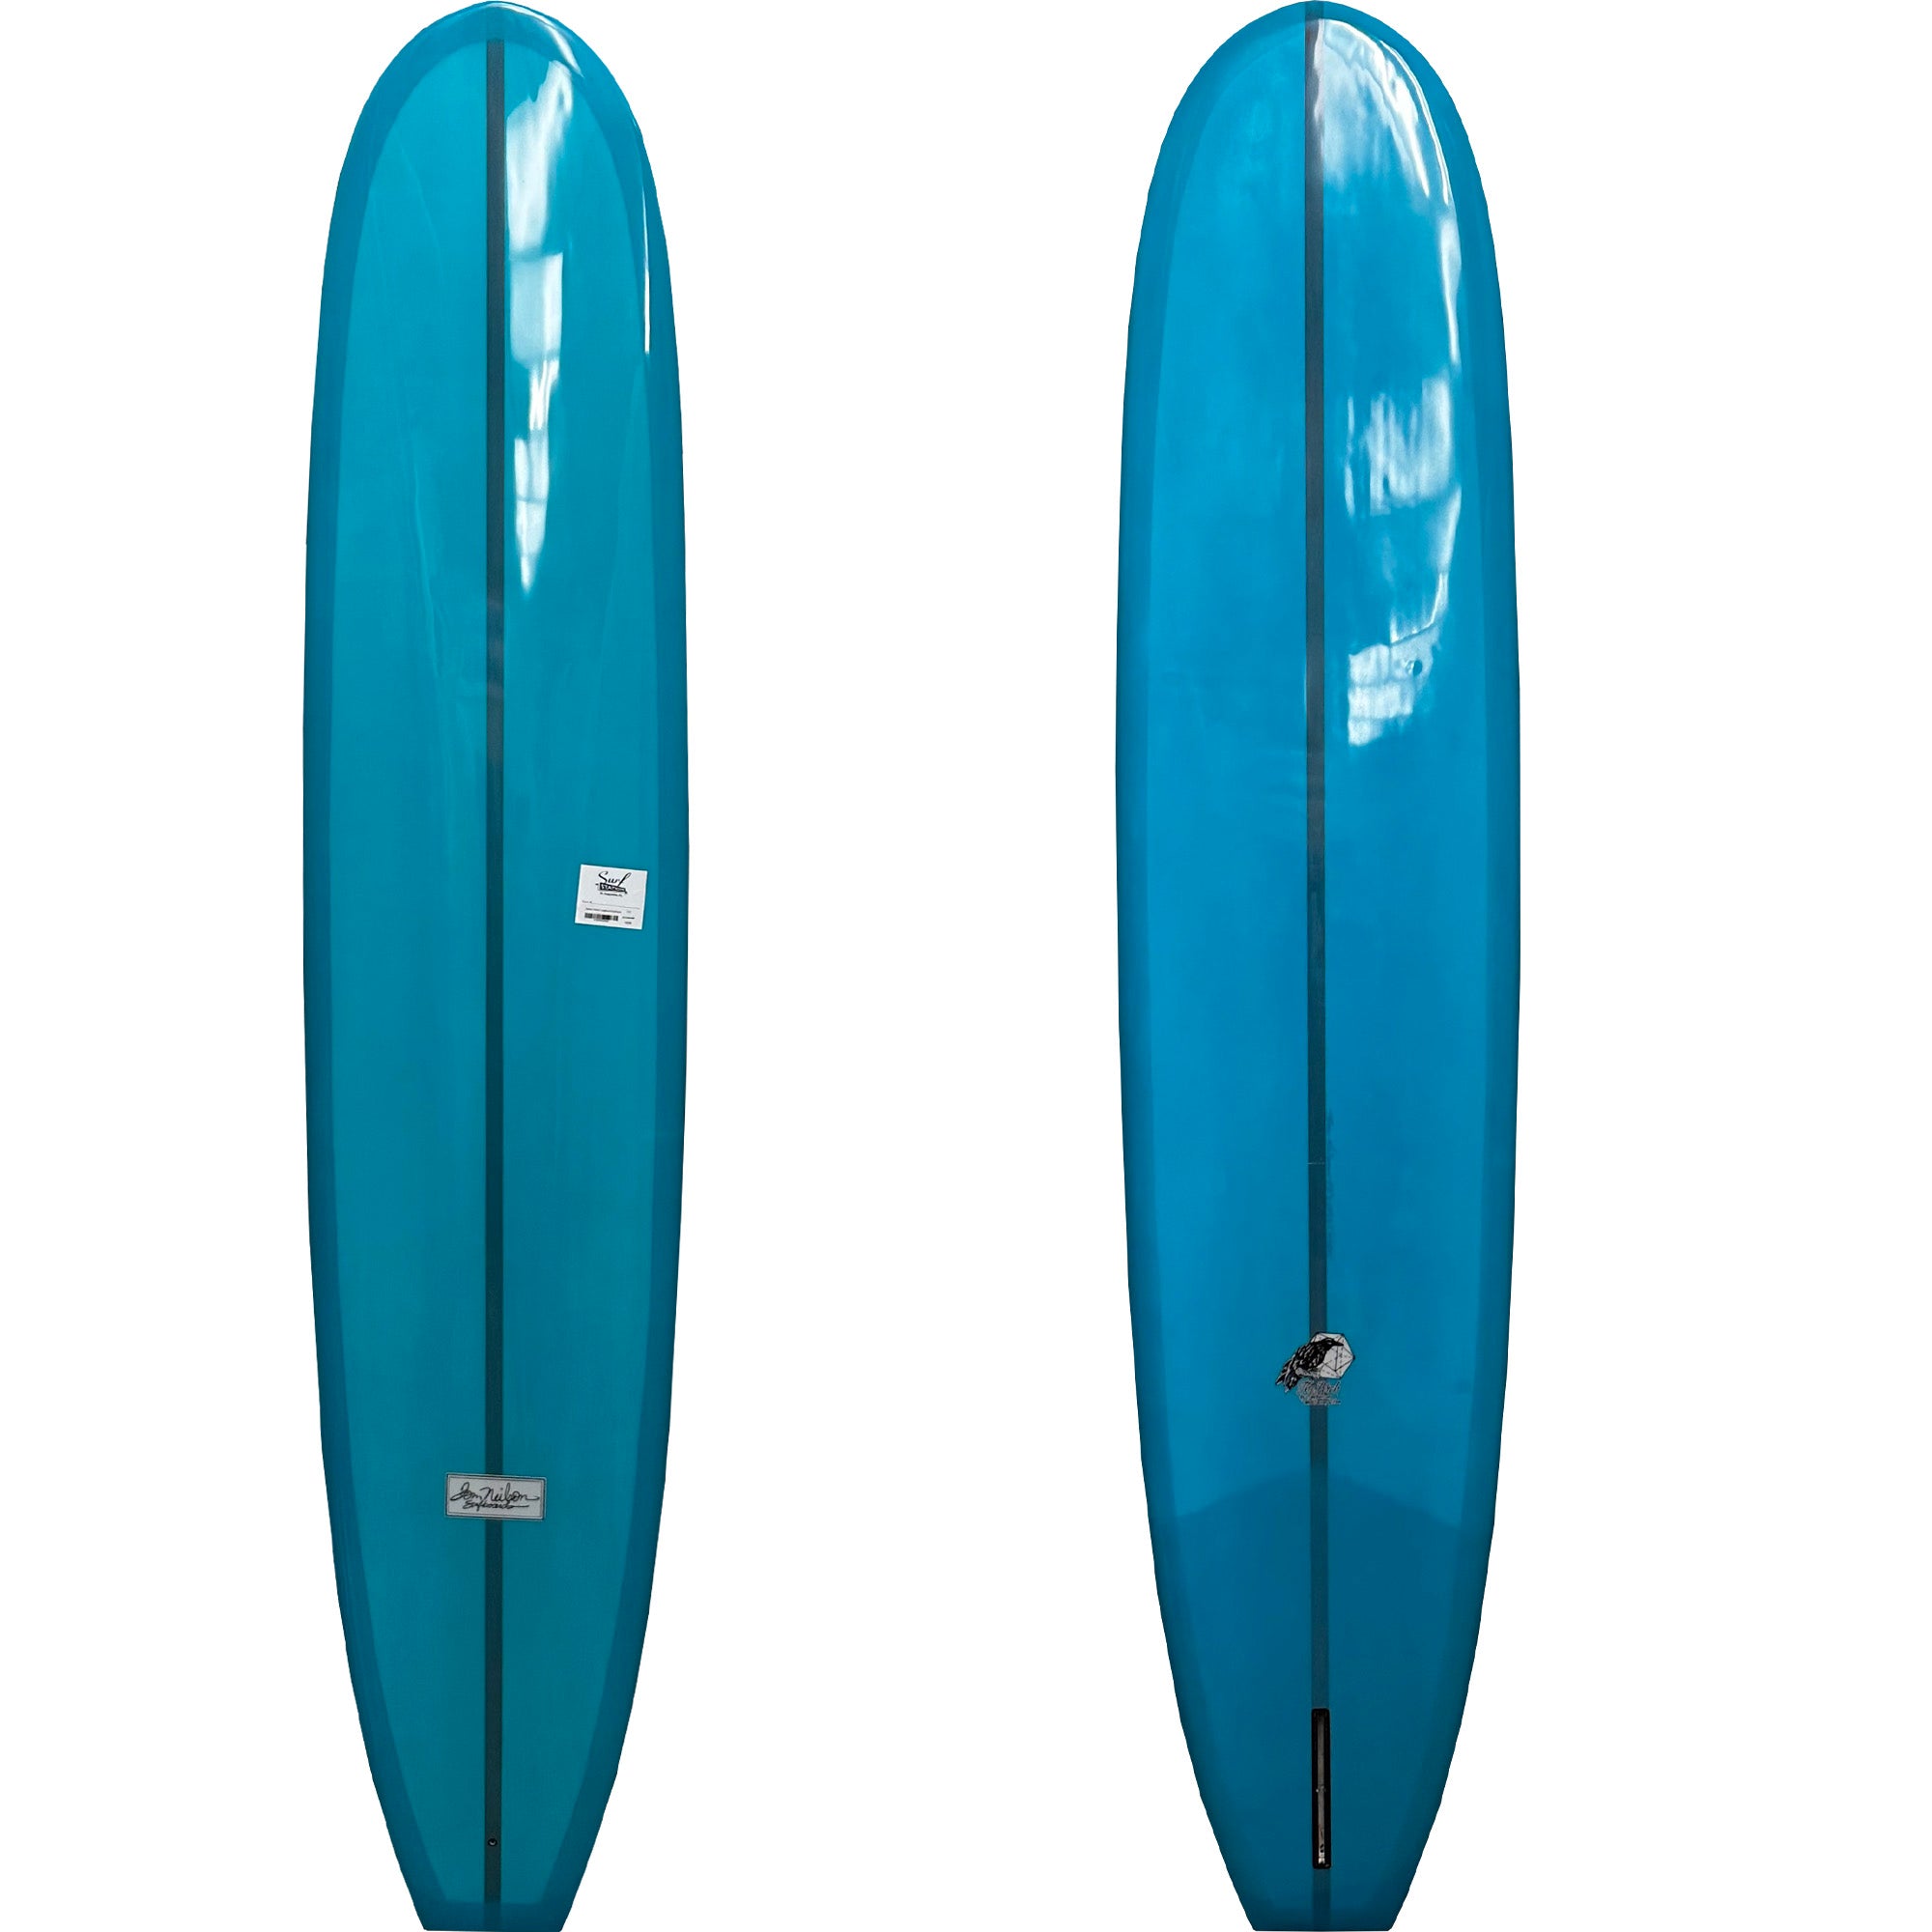 Neilson Perch Longboard Surfboard